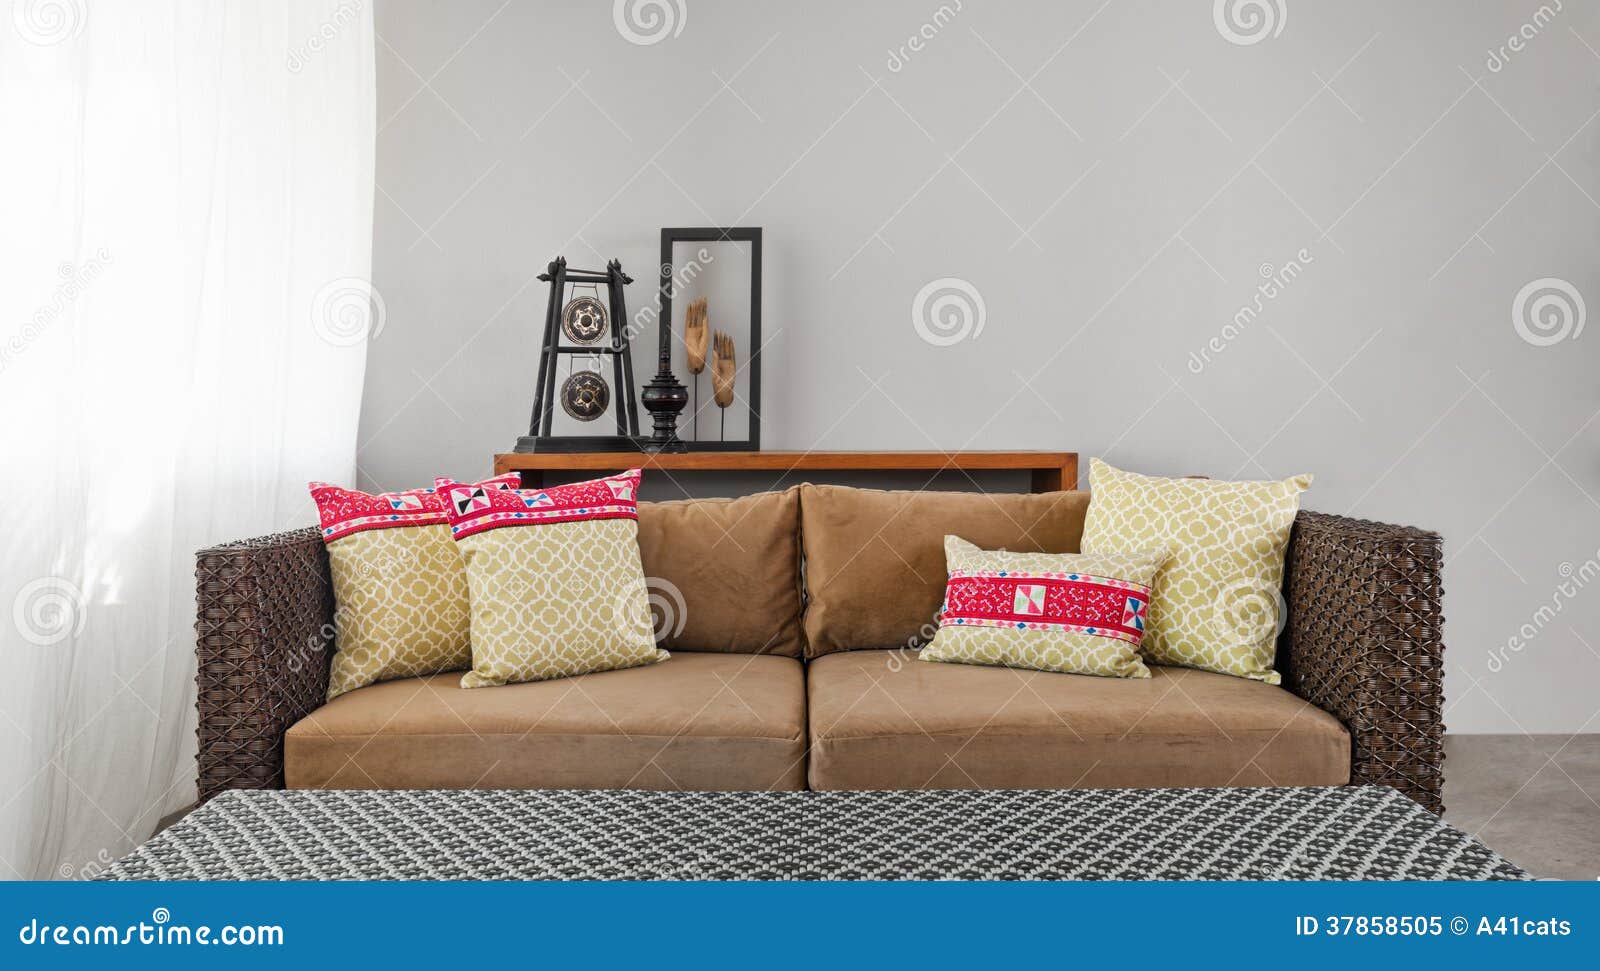 Beige Braunes Sofa In Der Luxuriosen Inneneinstellung